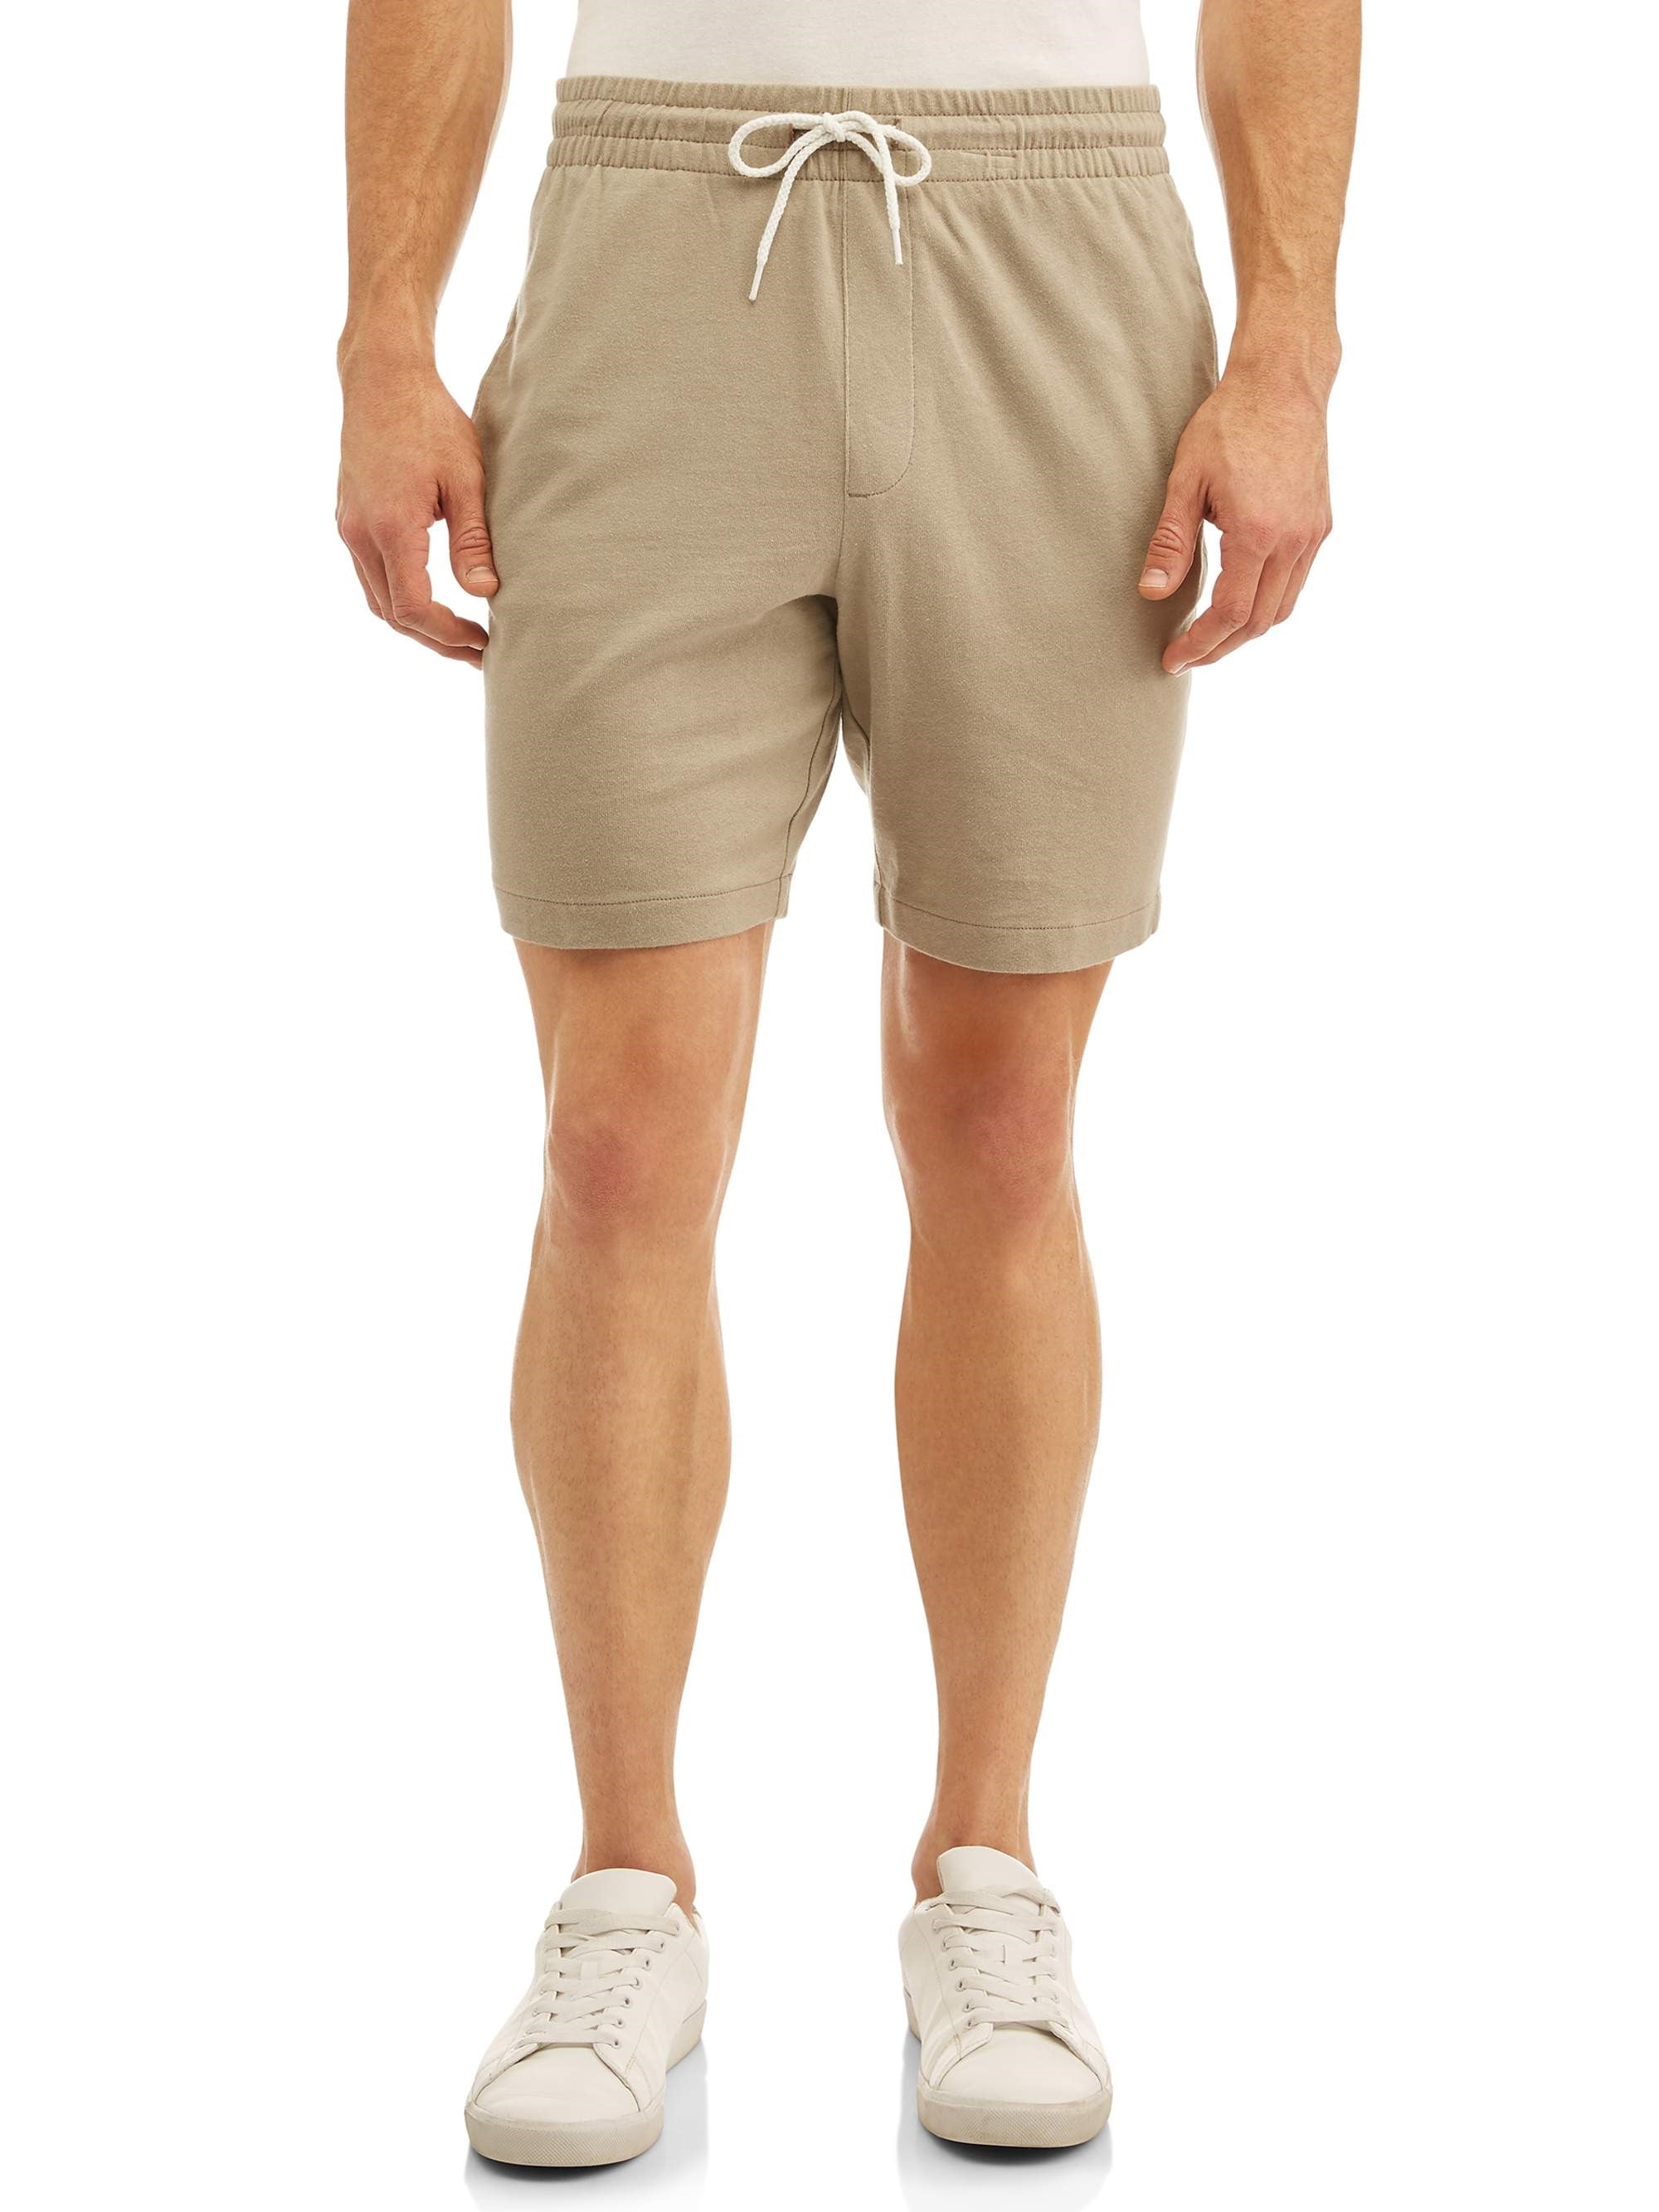 GEORGE - Big Men's Knit Jogger Shorts - Walmart.com - Walmart.com